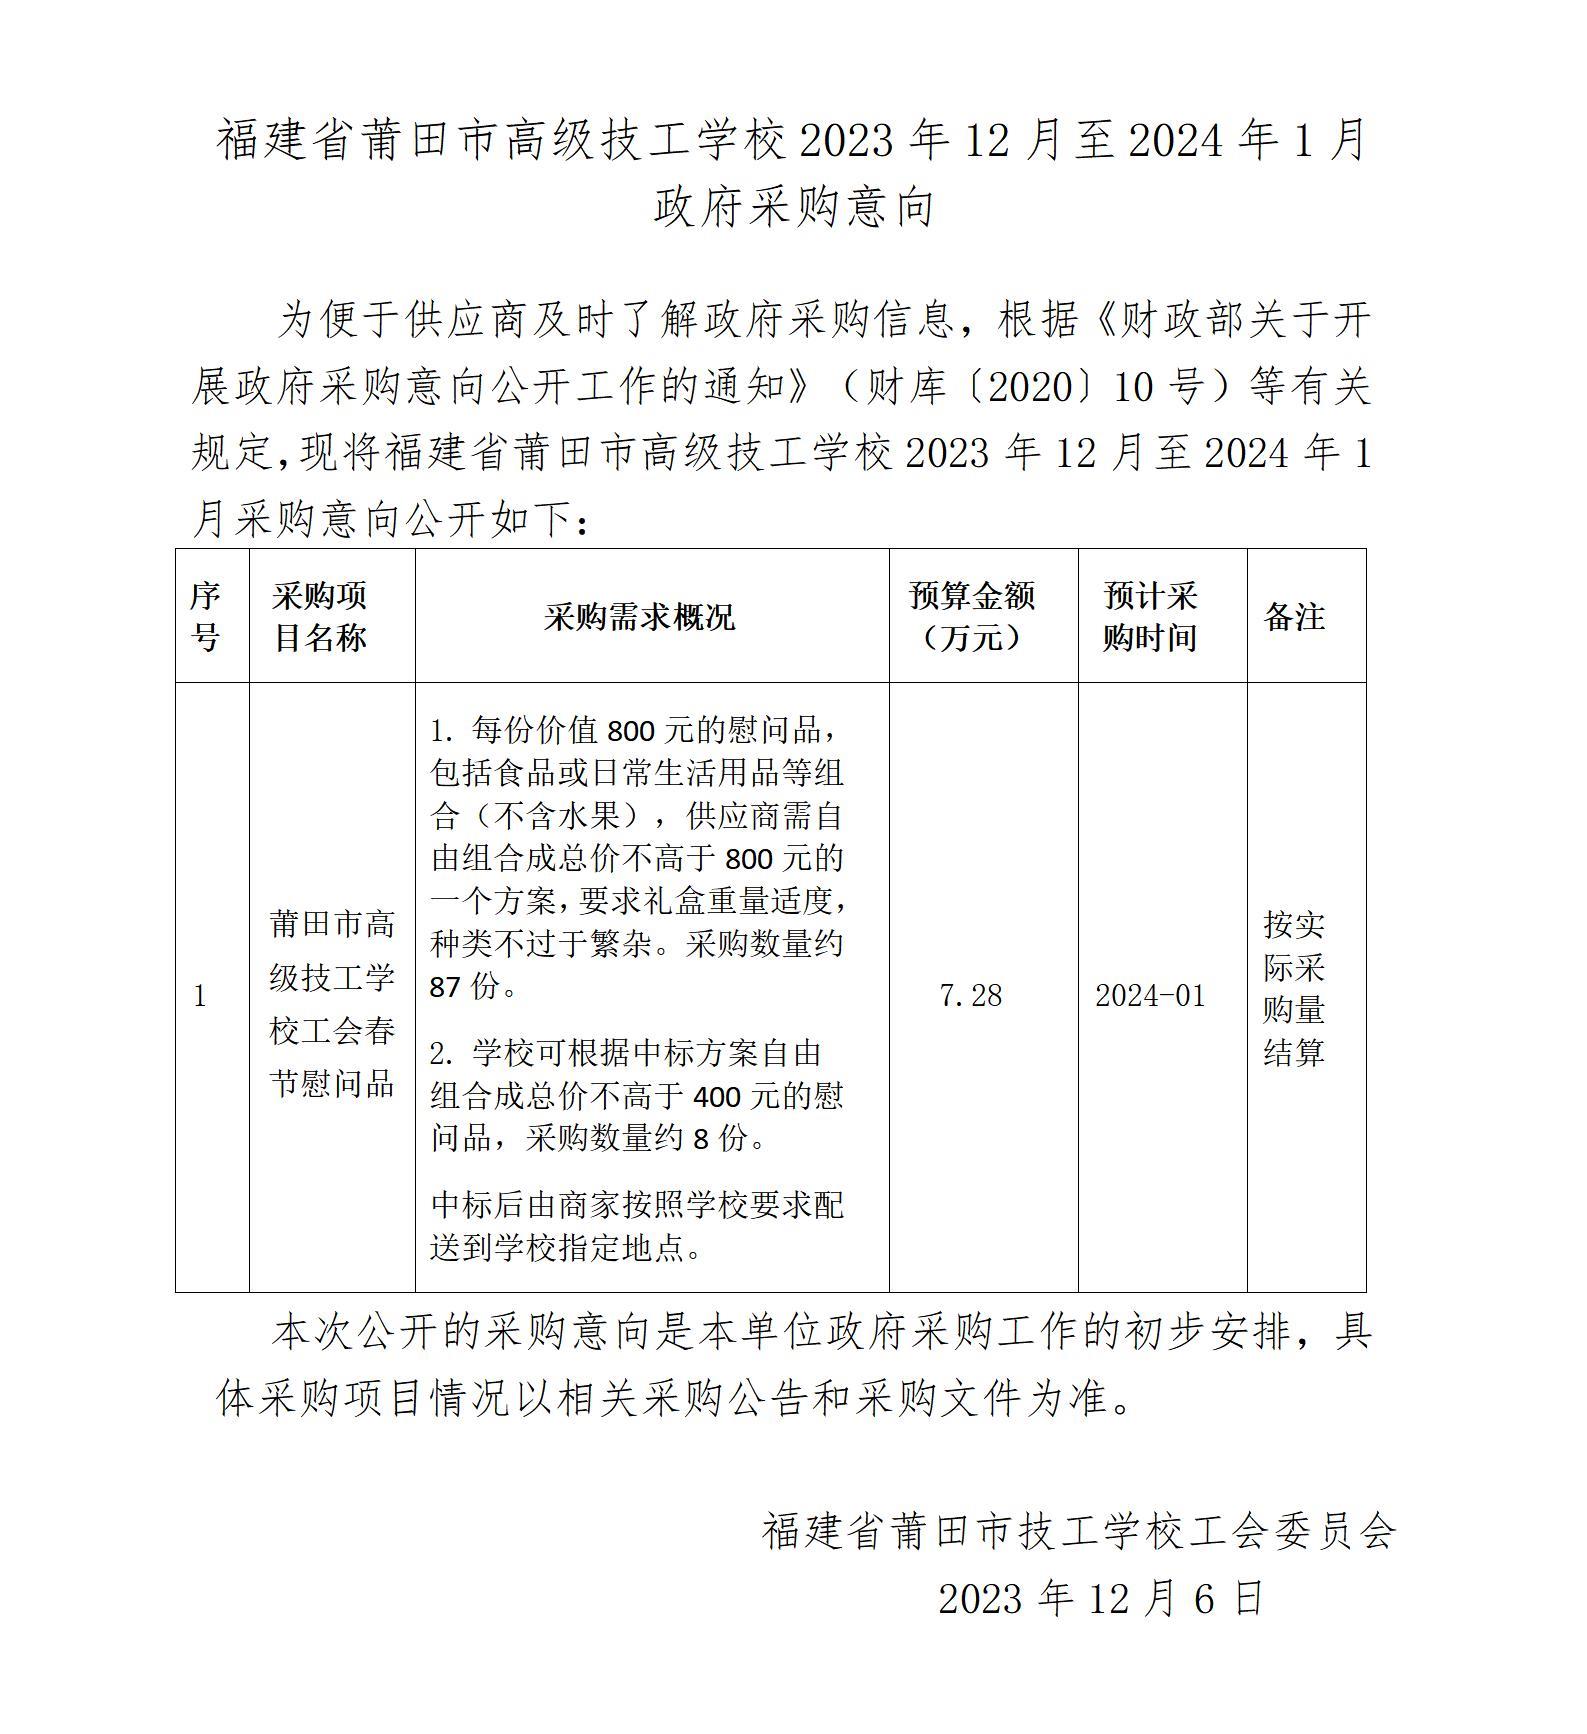 福建省莆田市高级技工学校2023年12月至2024年1月政府采购意向